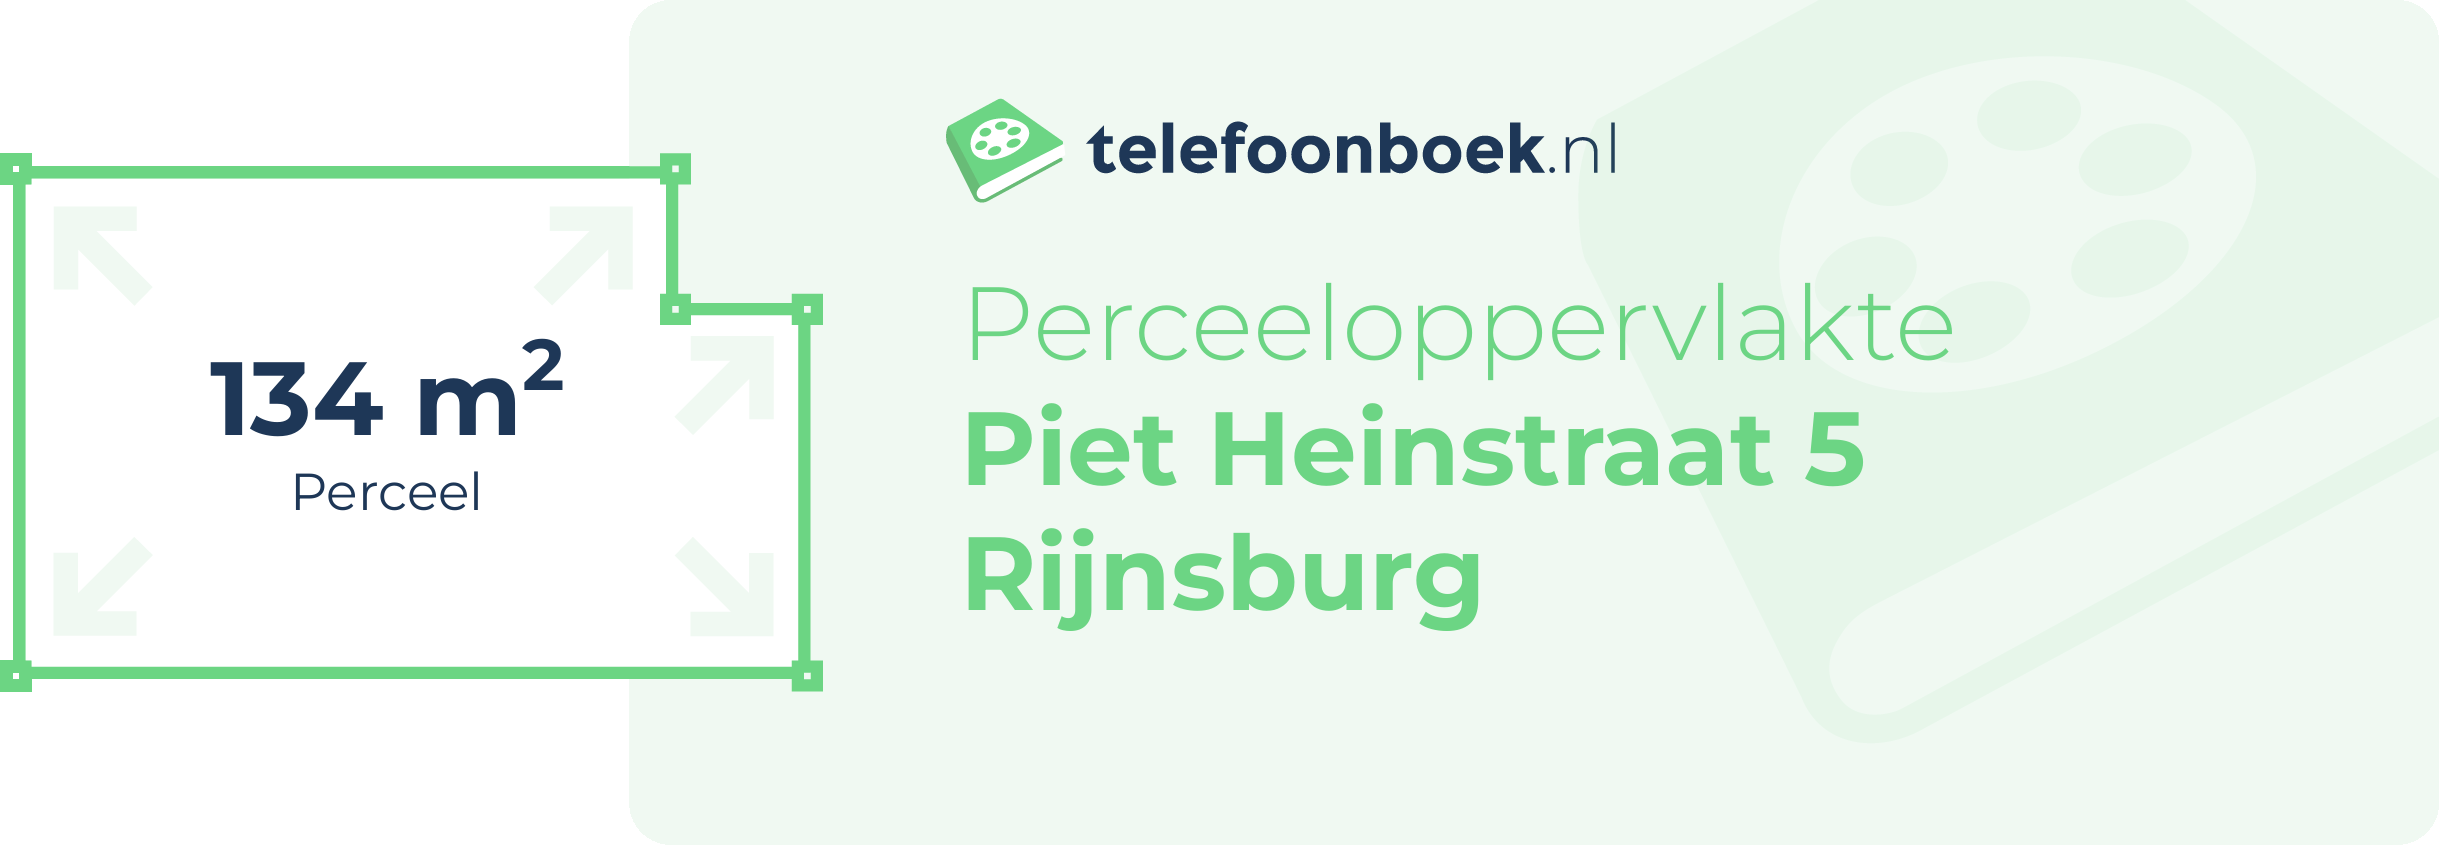 Perceeloppervlakte Piet Heinstraat 5 Rijnsburg